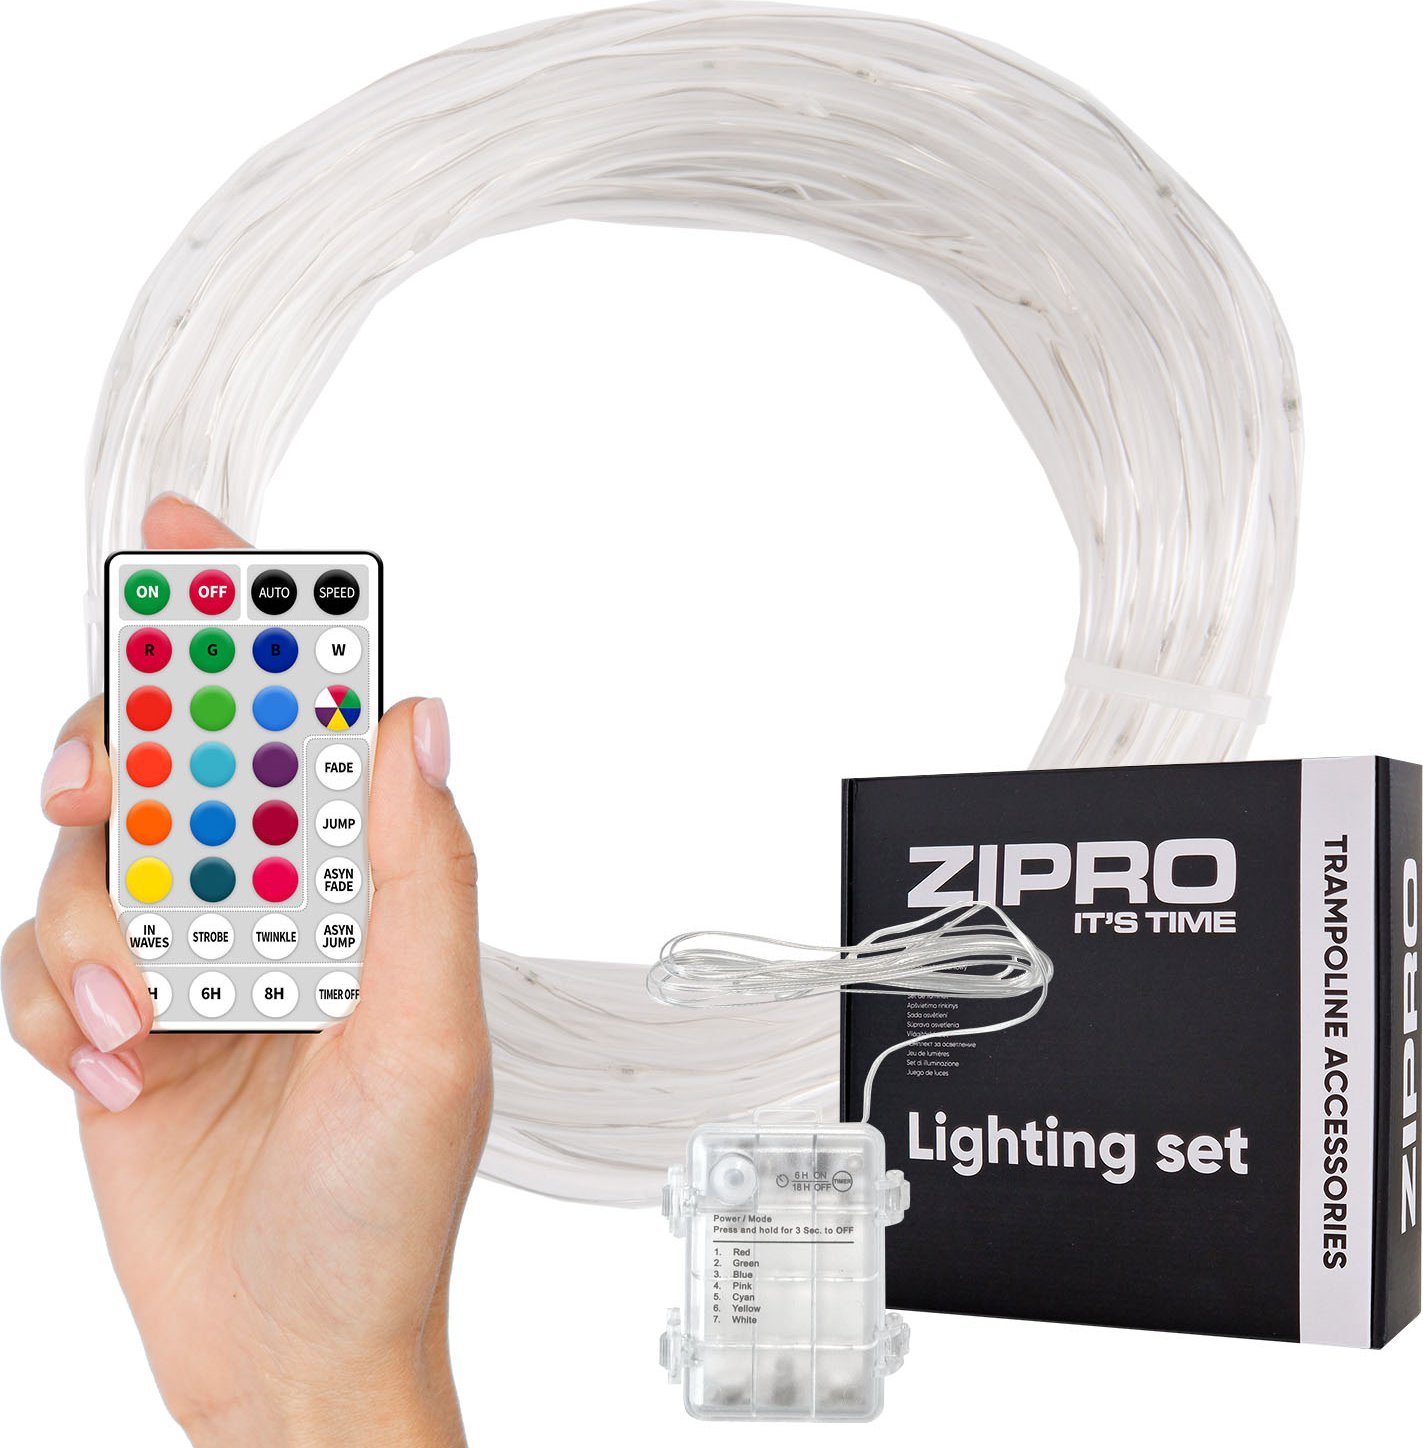 Zipro ZIPRO zestaw oswietleniowy 16 m do trampoliny 16FT 496 cm 12578753 (5902659843470) Batuts